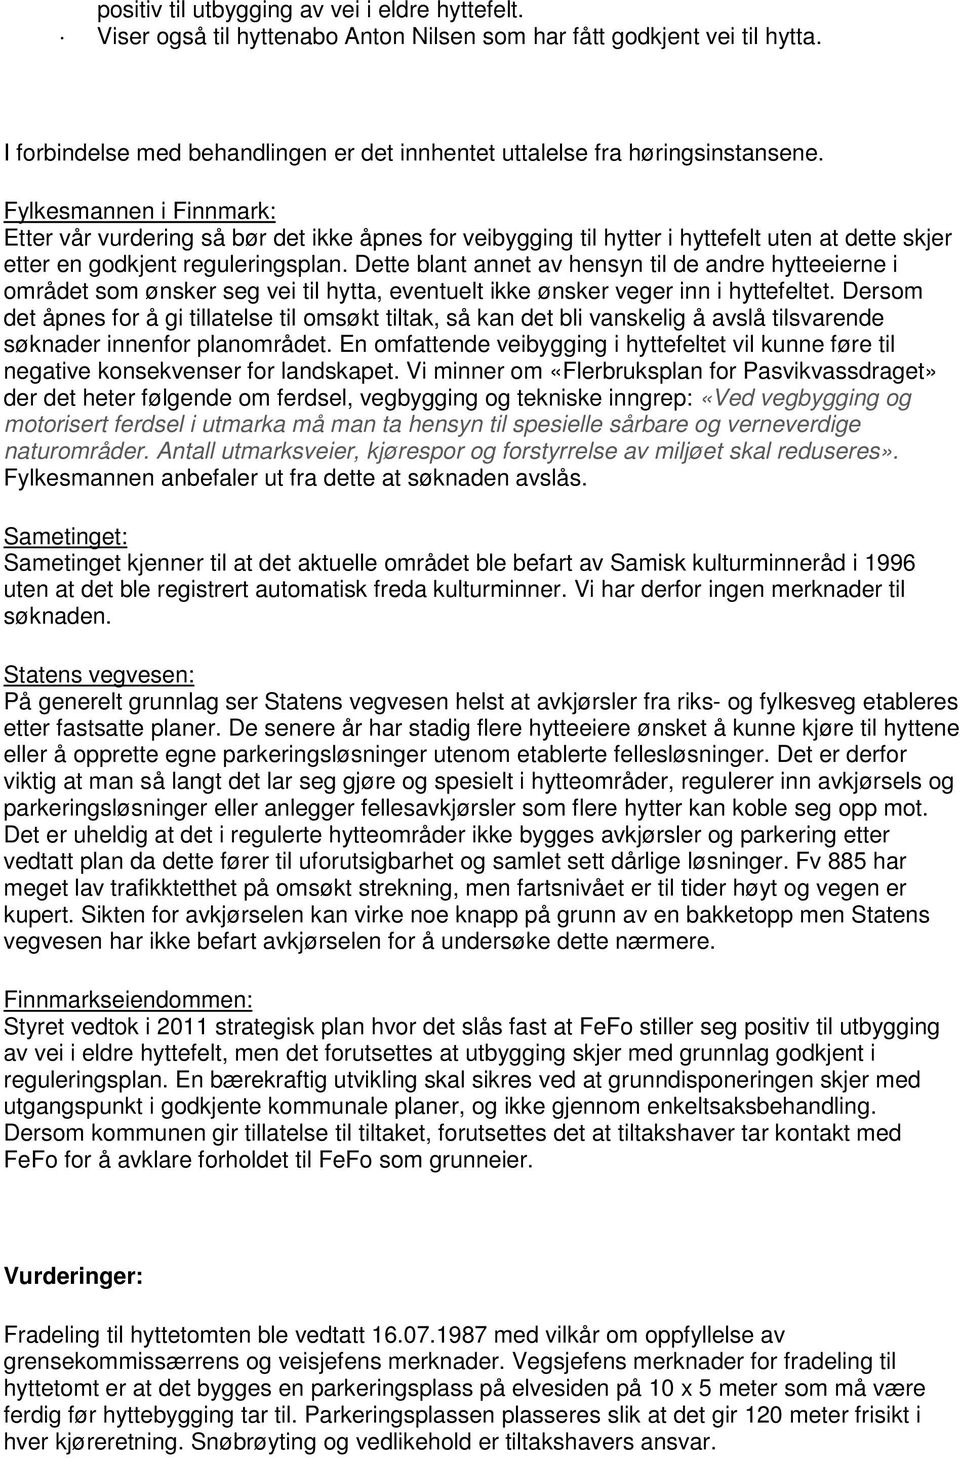 Fylkesmannen i Finnmark: Etter vår vurdering så bør det ikke åpnes for veibygging til hytter i hyttefelt uten at dette skjer etter en godkjent reguleringsplan.